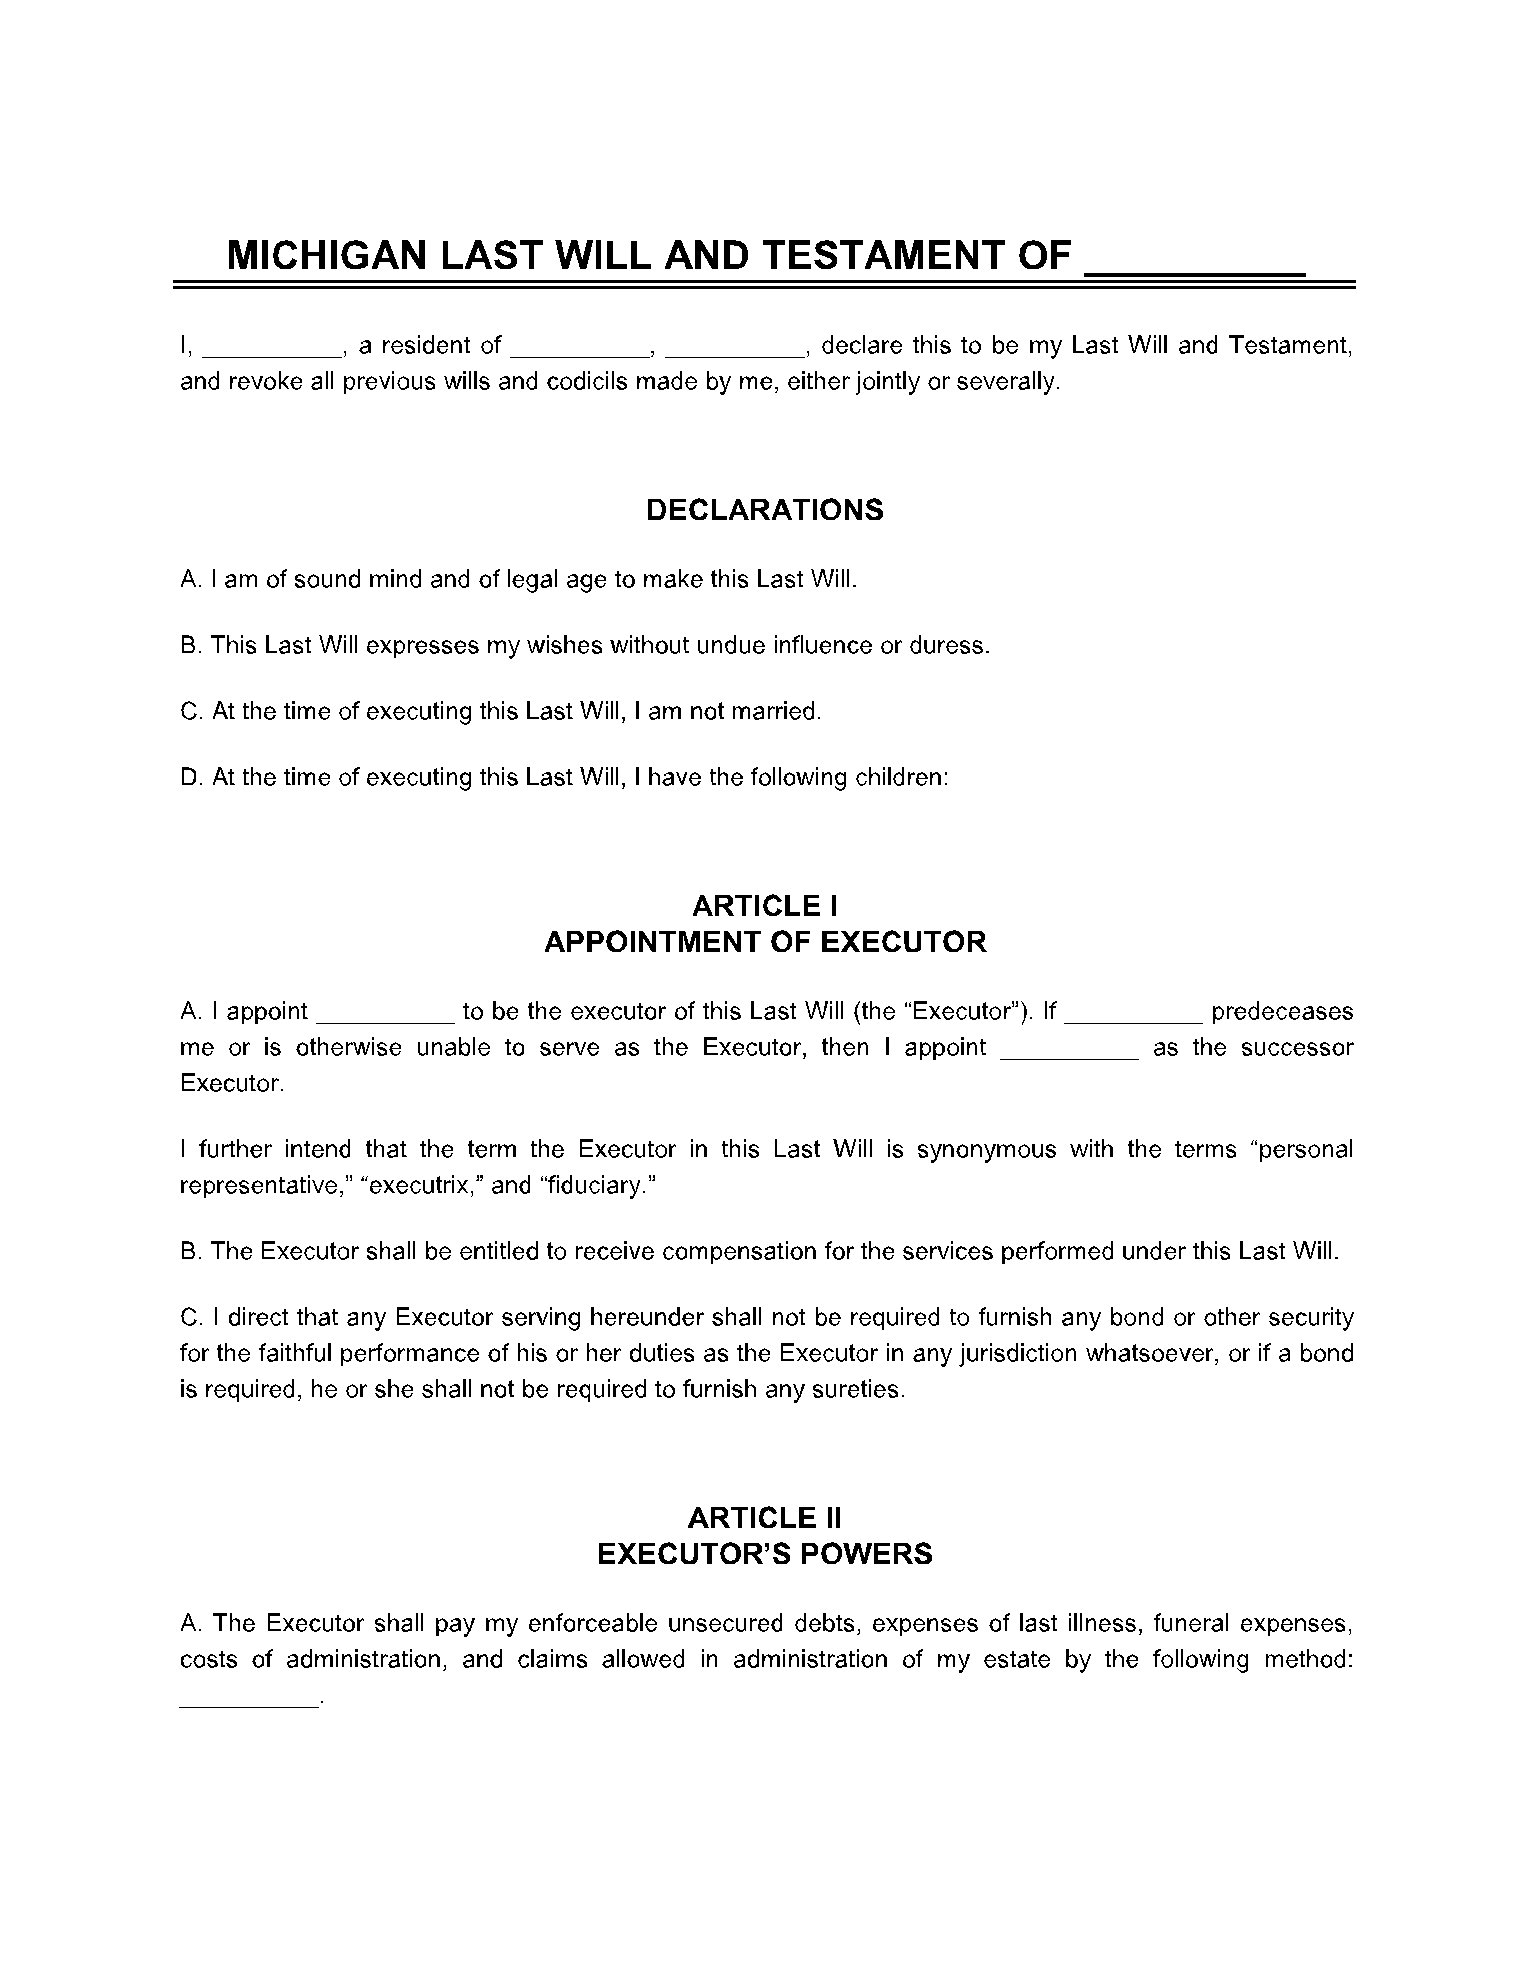 Last Will and Testament Michigan